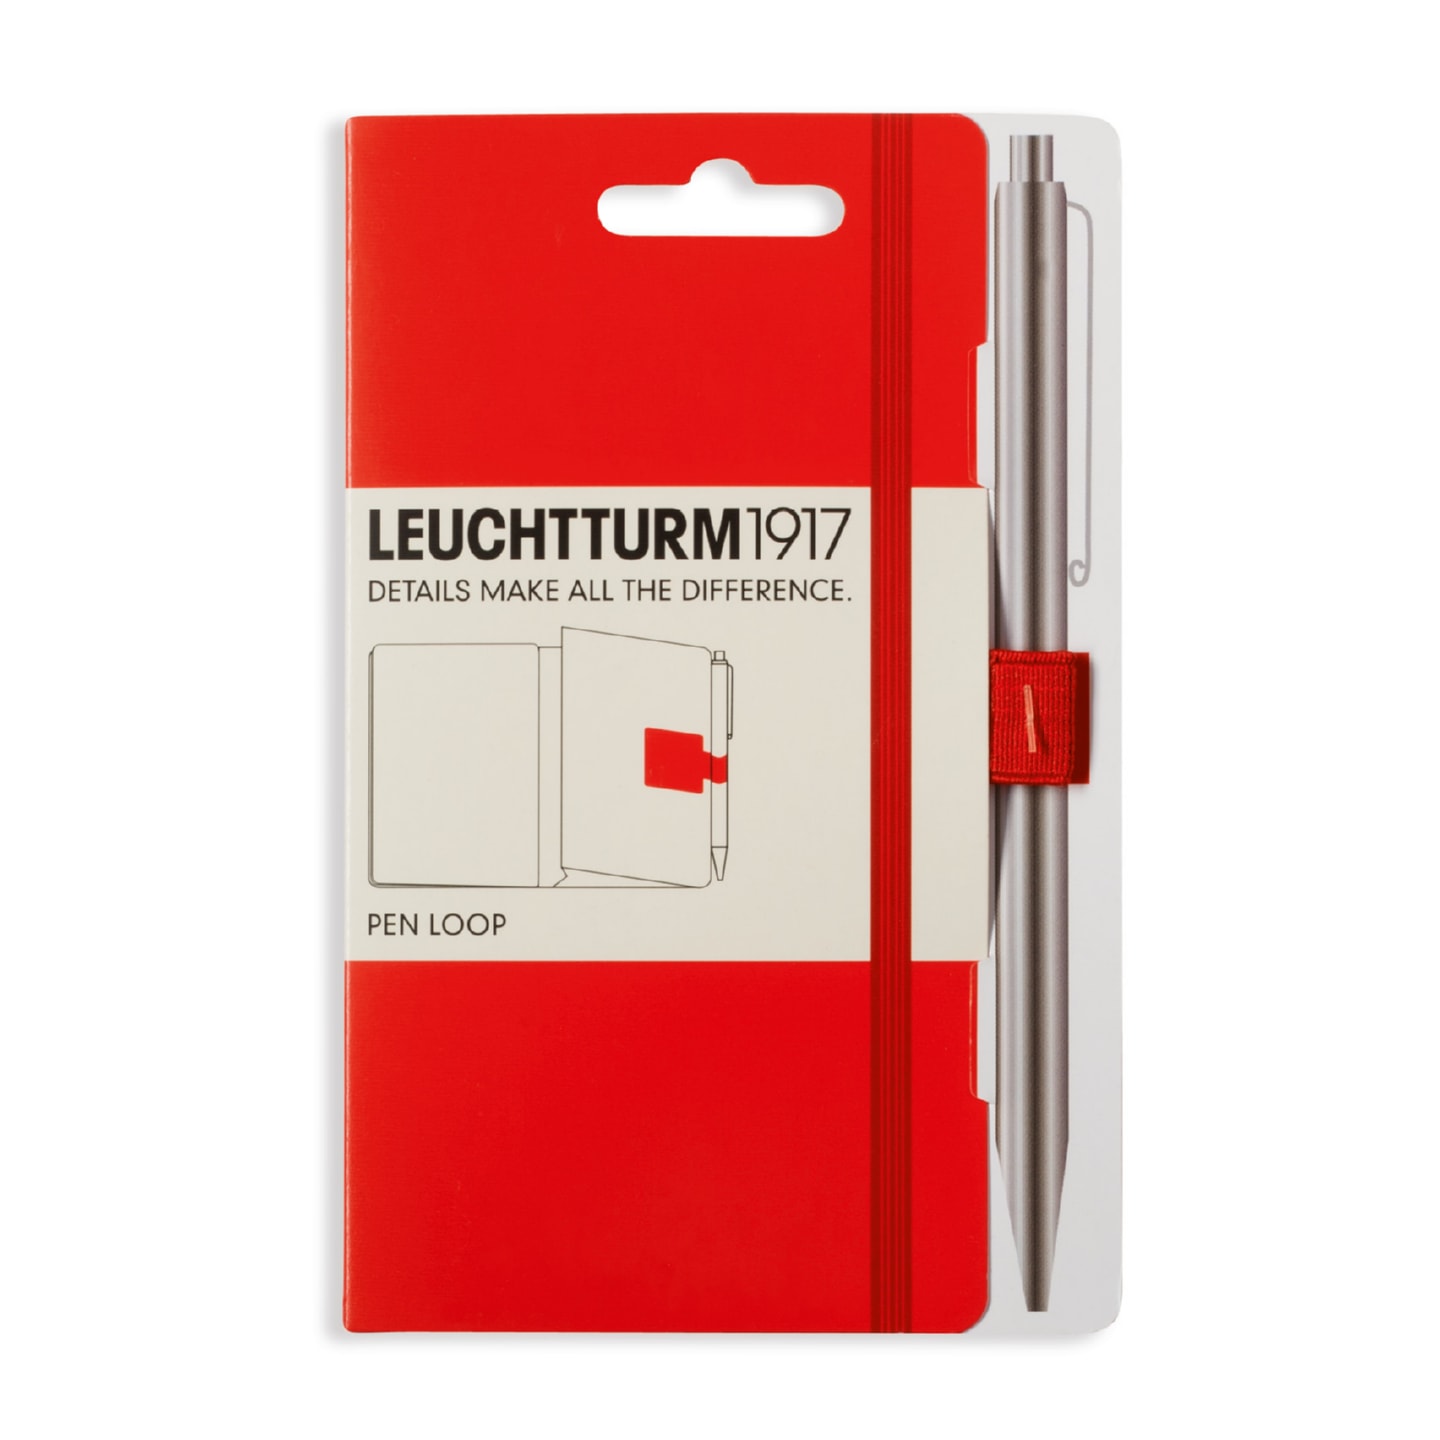 Петля самоклеящаяся Pen Loop для ручек на блокноты Leuchtturm1917 цвет Красный